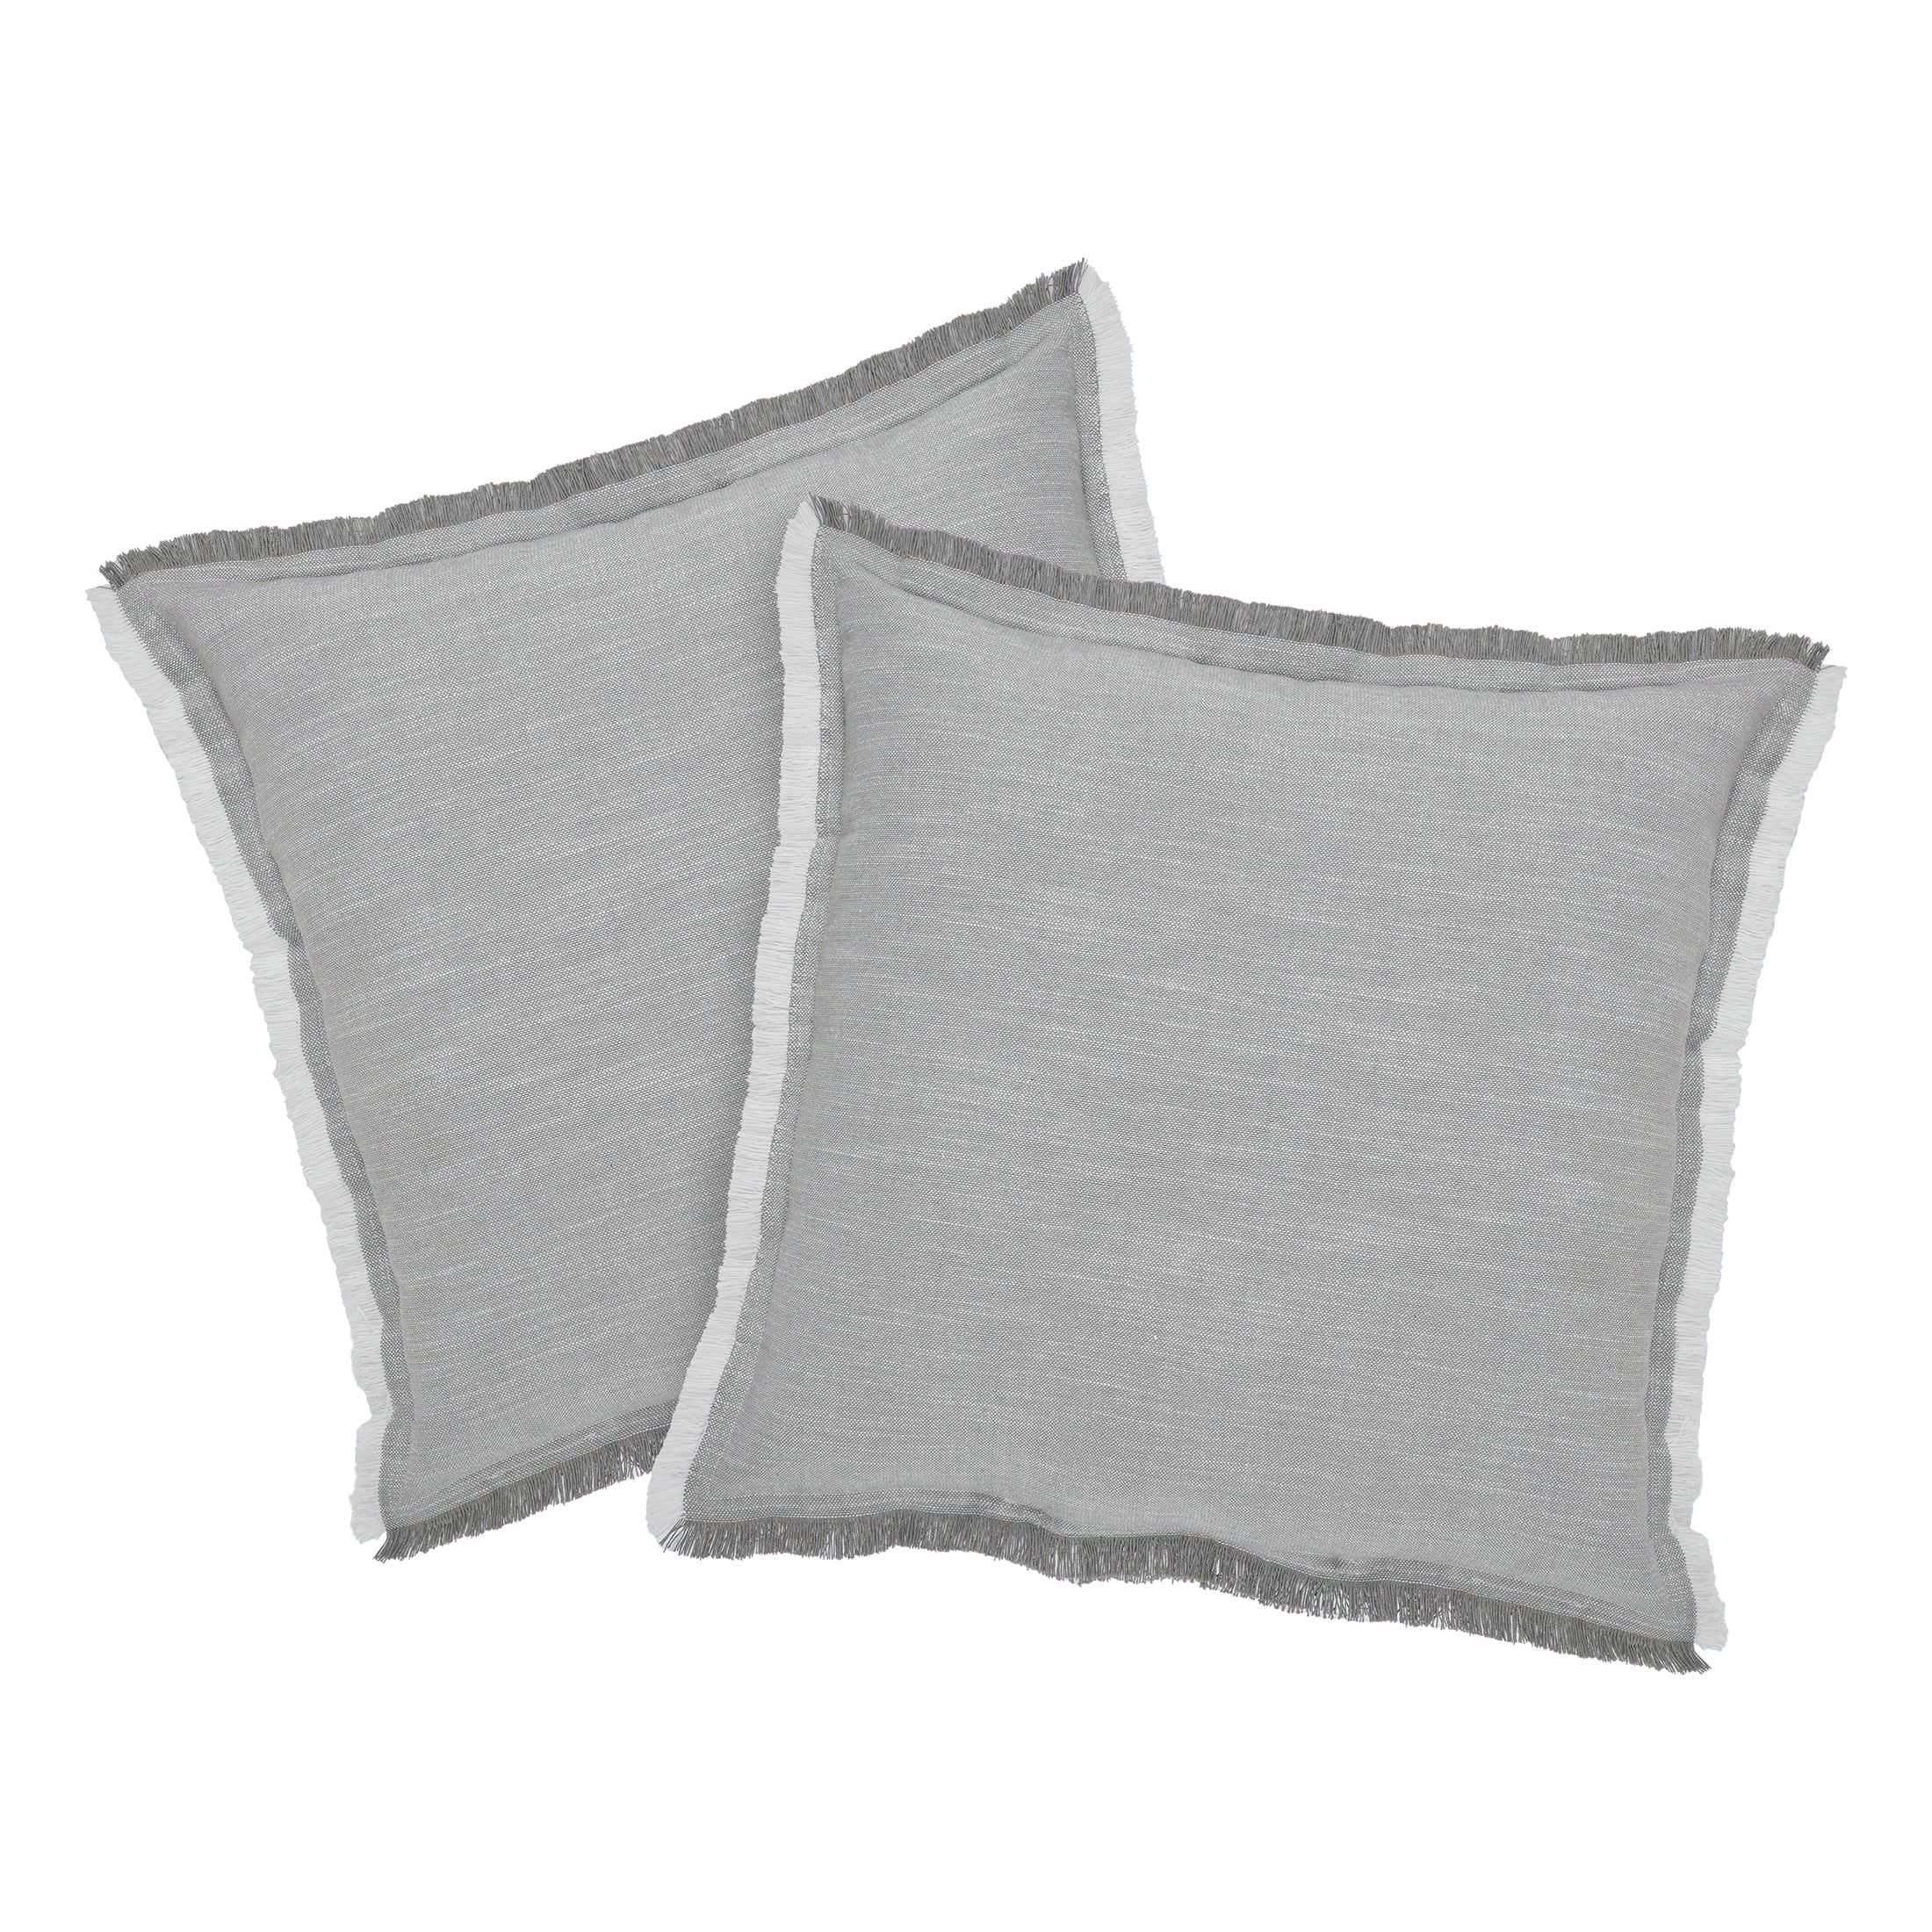 Better Homes & Gardens 20" x 20" Grey Cotton Decorative Pillows (2 Count) - Walmart.com | Walmart (US)